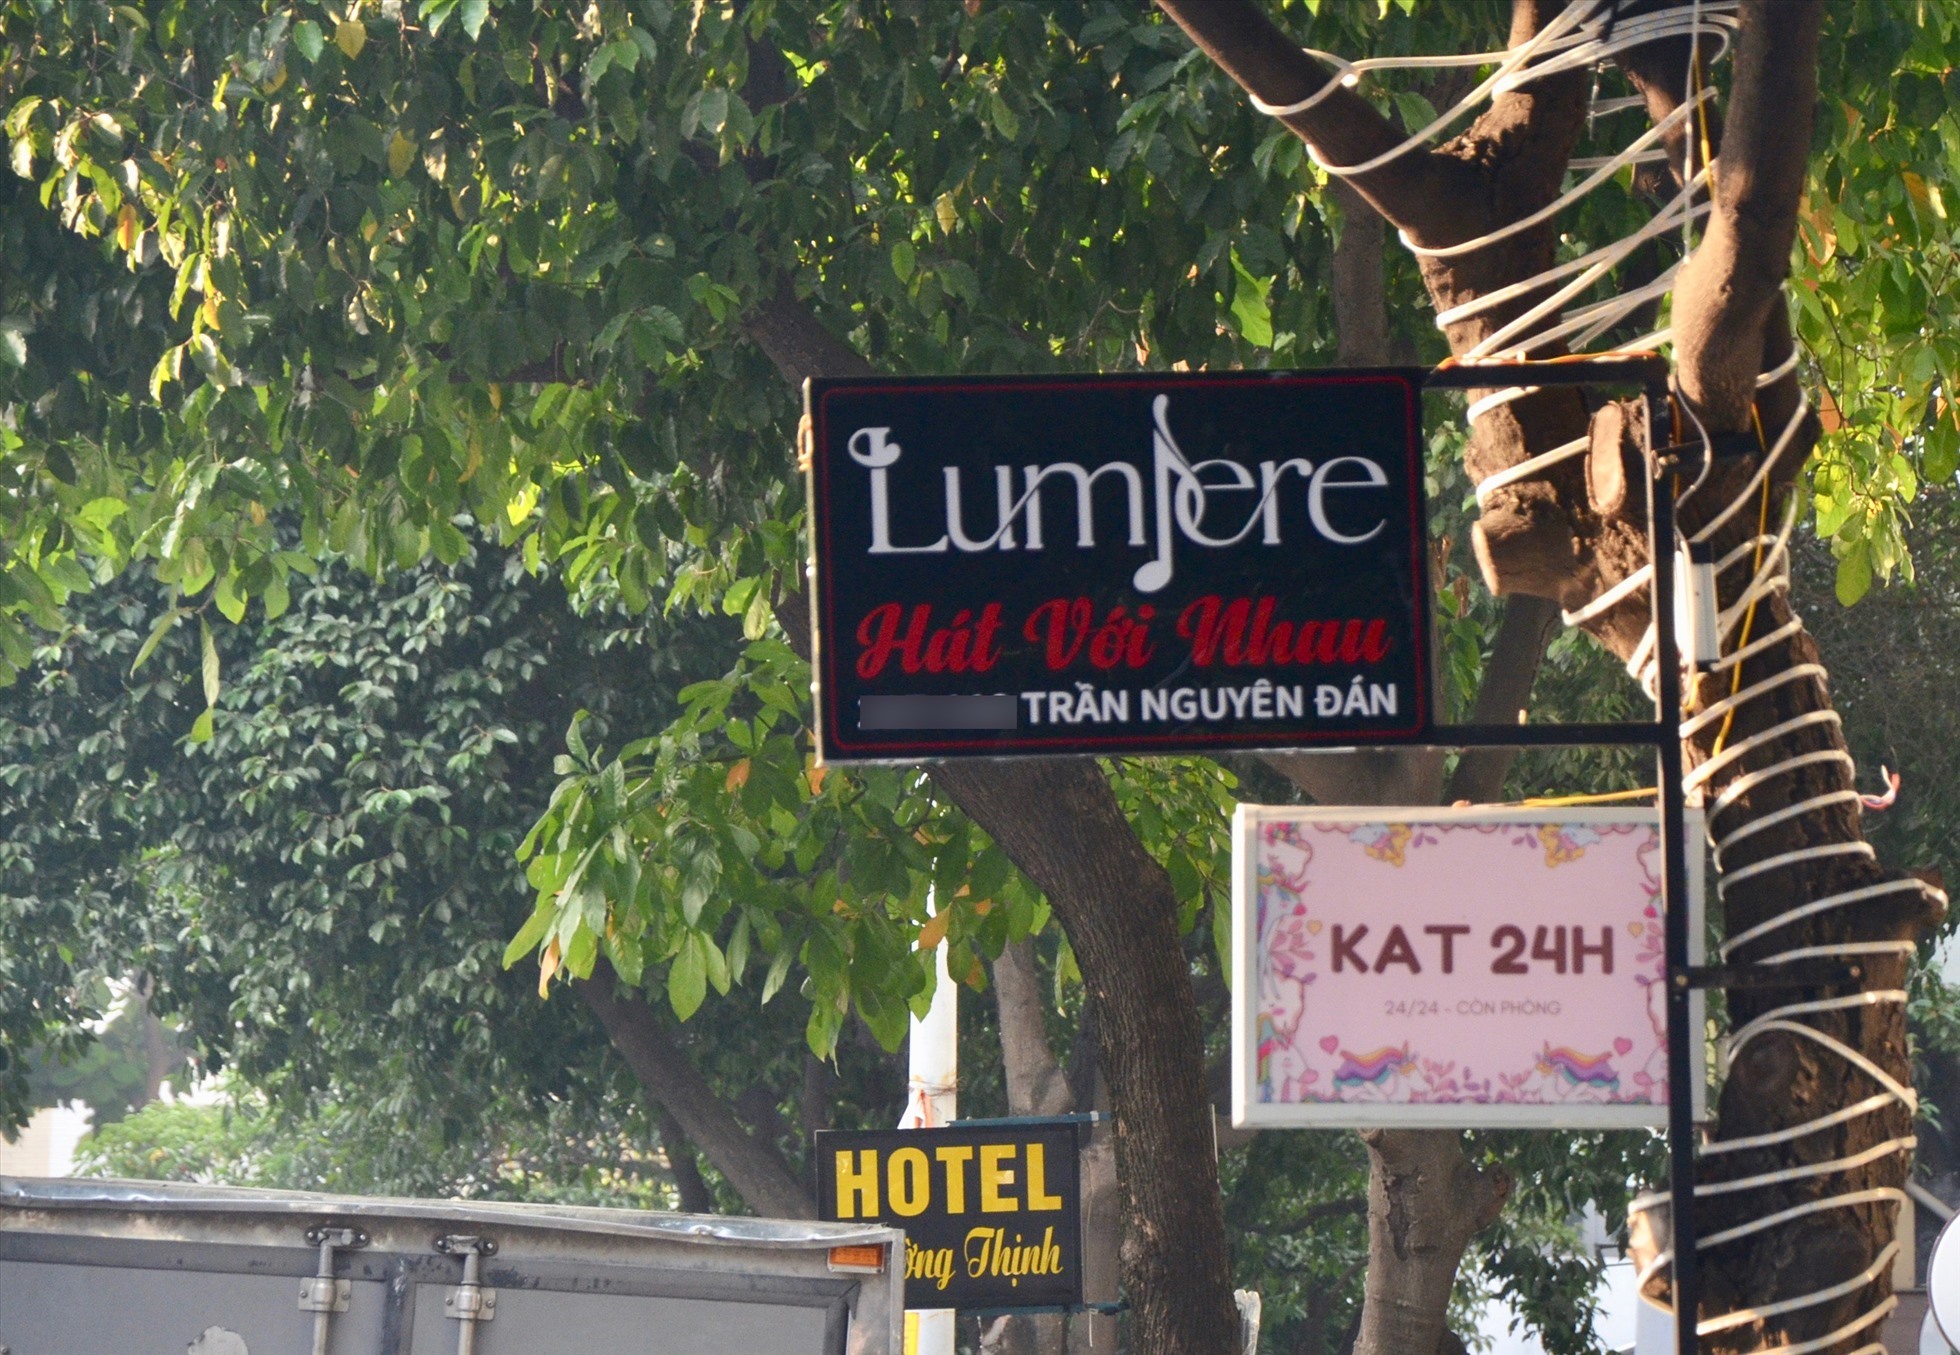 Những biển quảng cáo được gắn trên cây ở TP Hồ Chí Minh. Ảnh: Tuệ Nhi